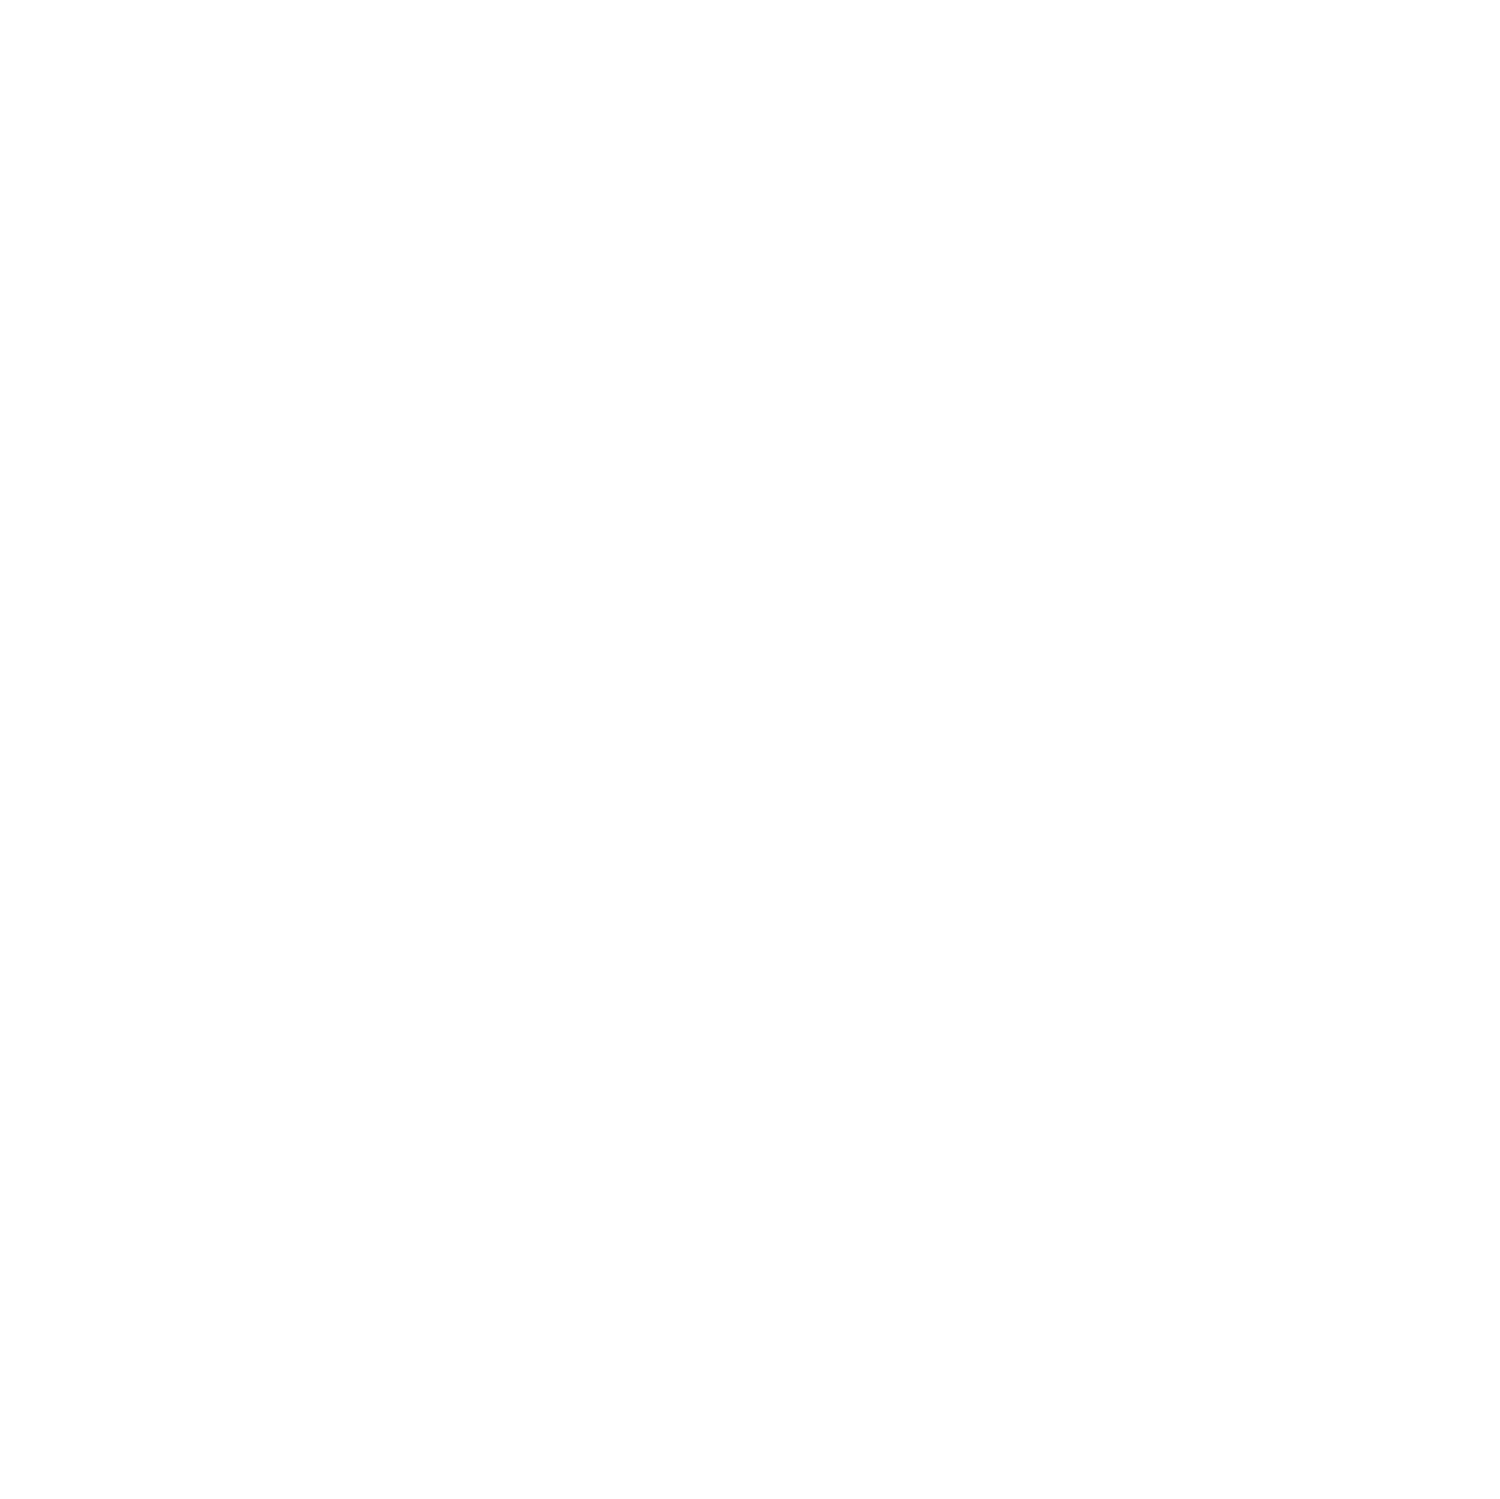 Aquatic Life Institute